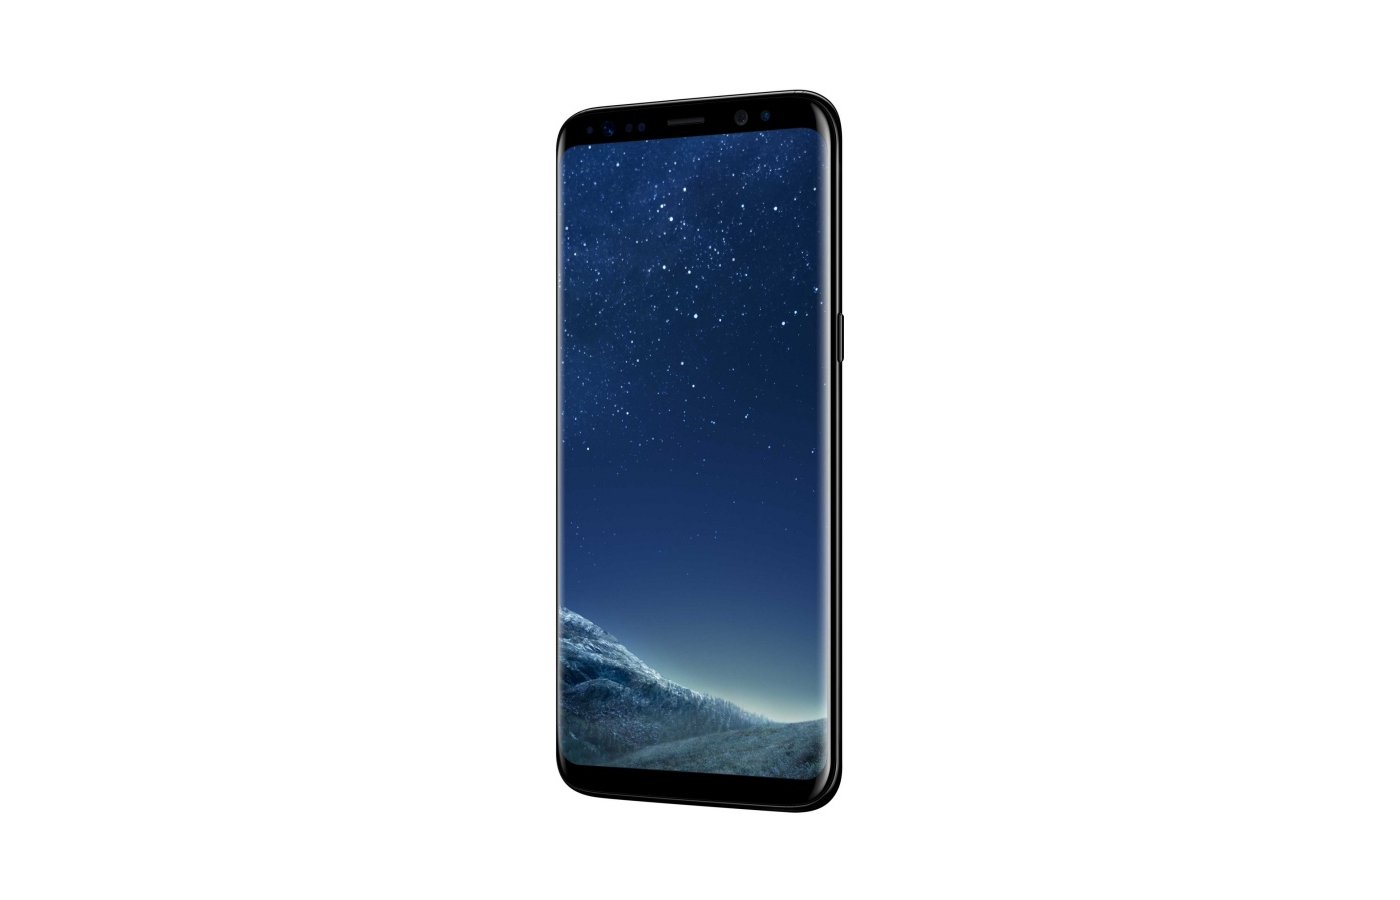 Samsung galaxy os. Samsung g950 Galaxy s8. S8+. Samsung Galaxy s8 Plus дисплей. Картинки на телефон самсунг галакси 8+.